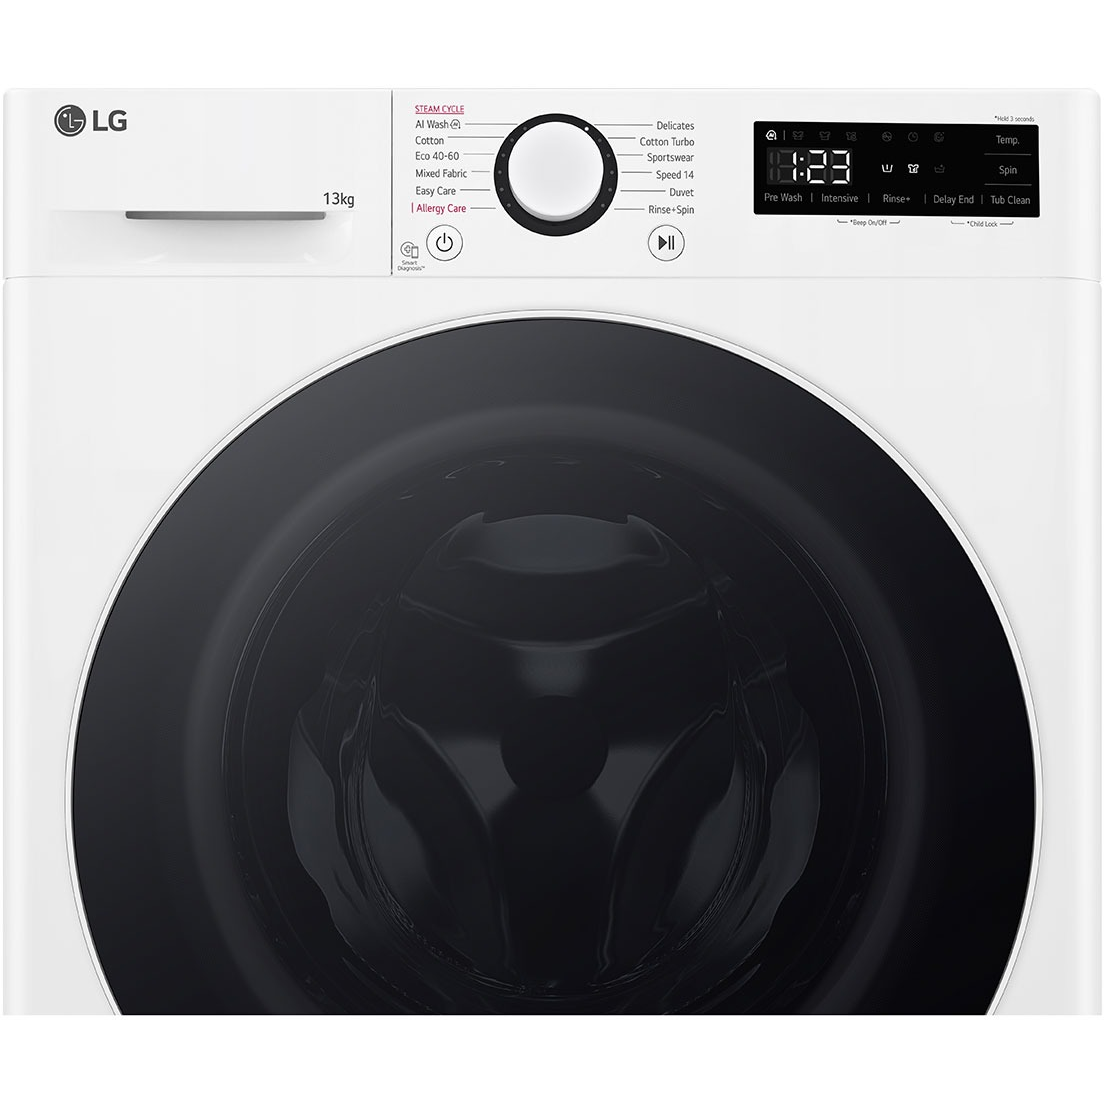 LG F4Y5LYP0W - Frontbetjent vaskemaskine